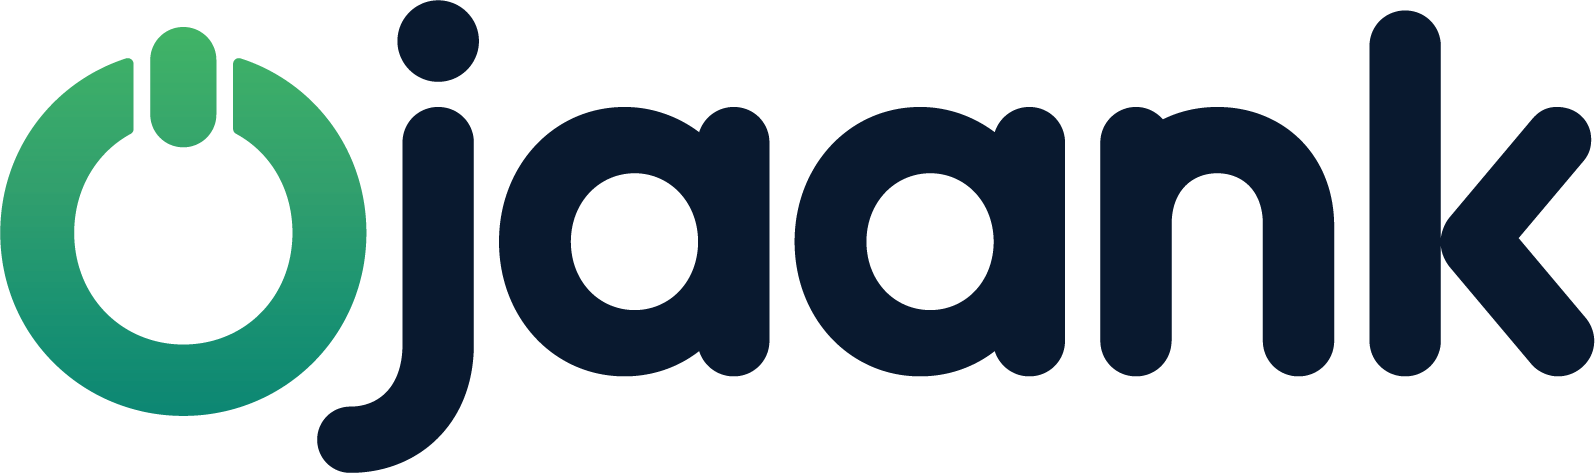 ojaank_logo